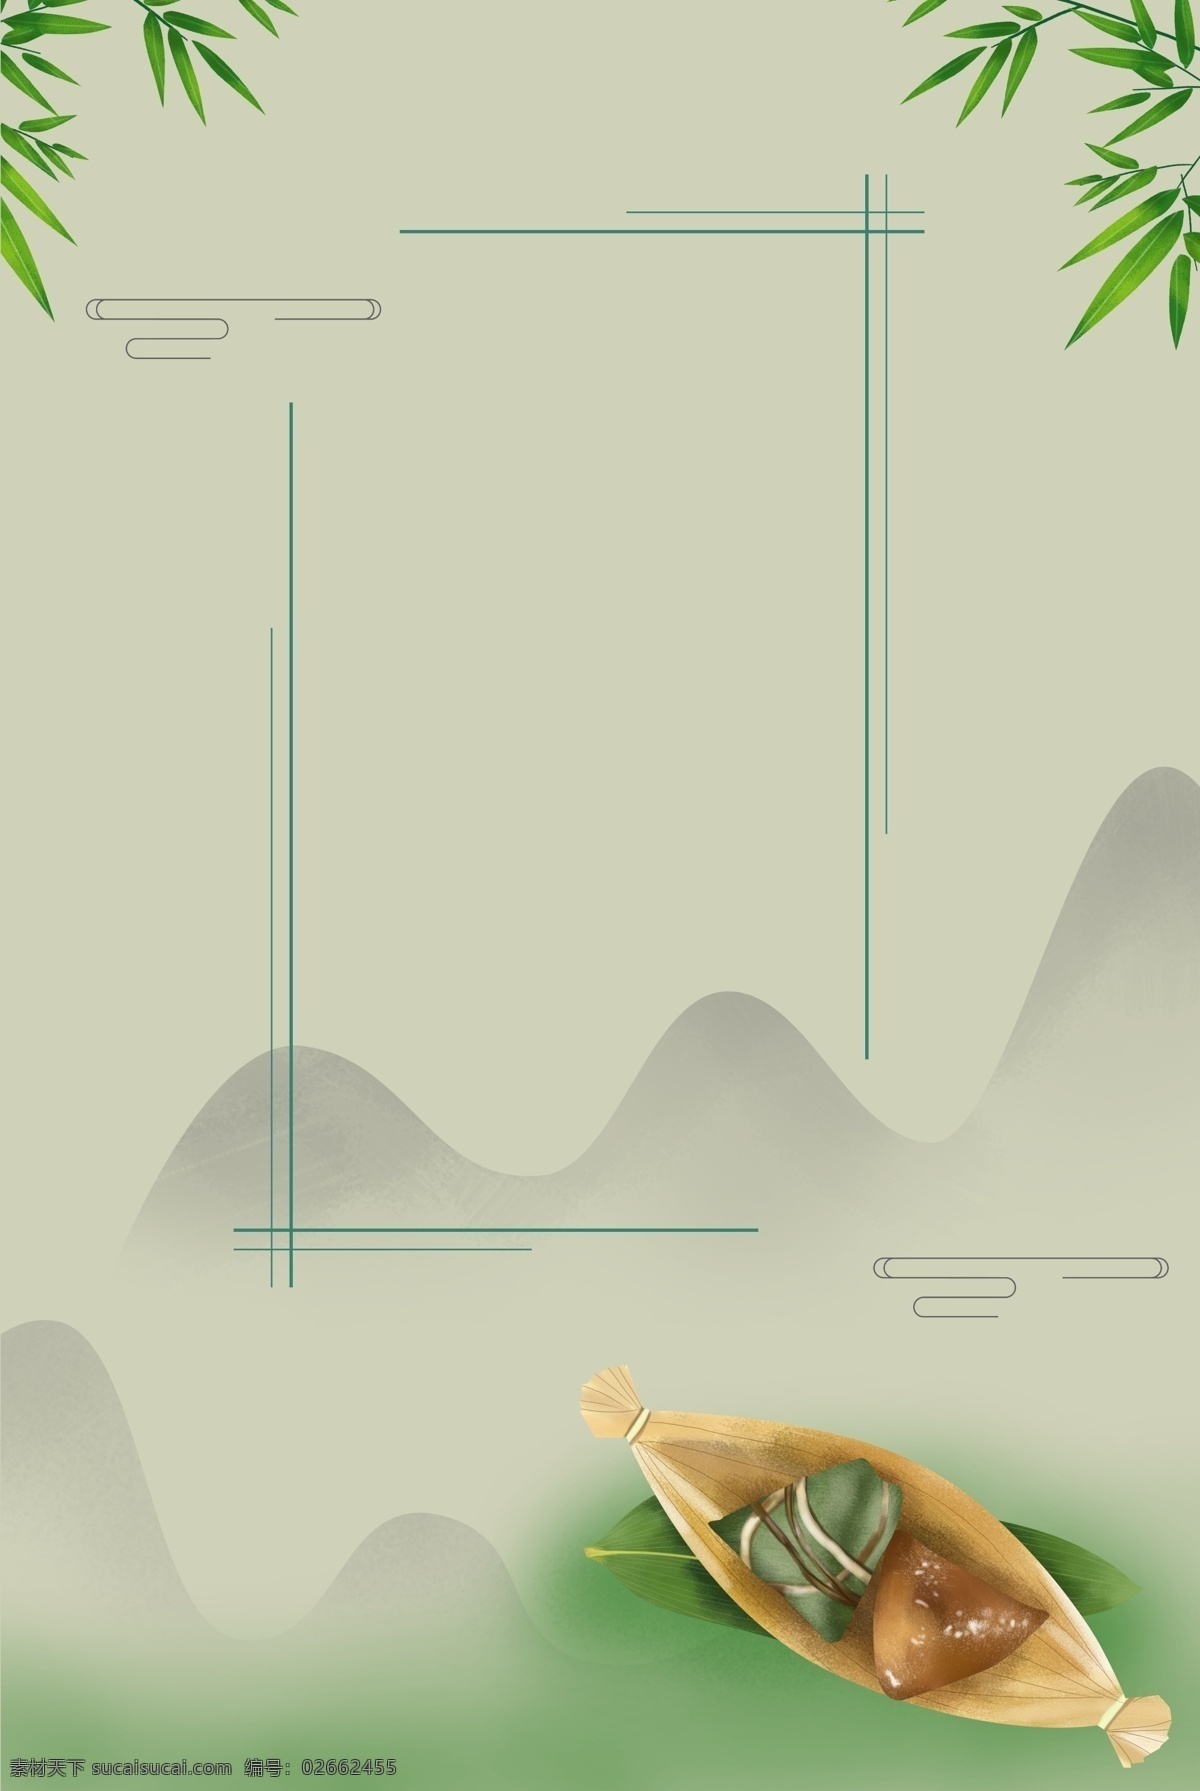 复古 传统 端午节 背景 叶子 粽子 船 山 边框 中国风 土色 灰色 绿色